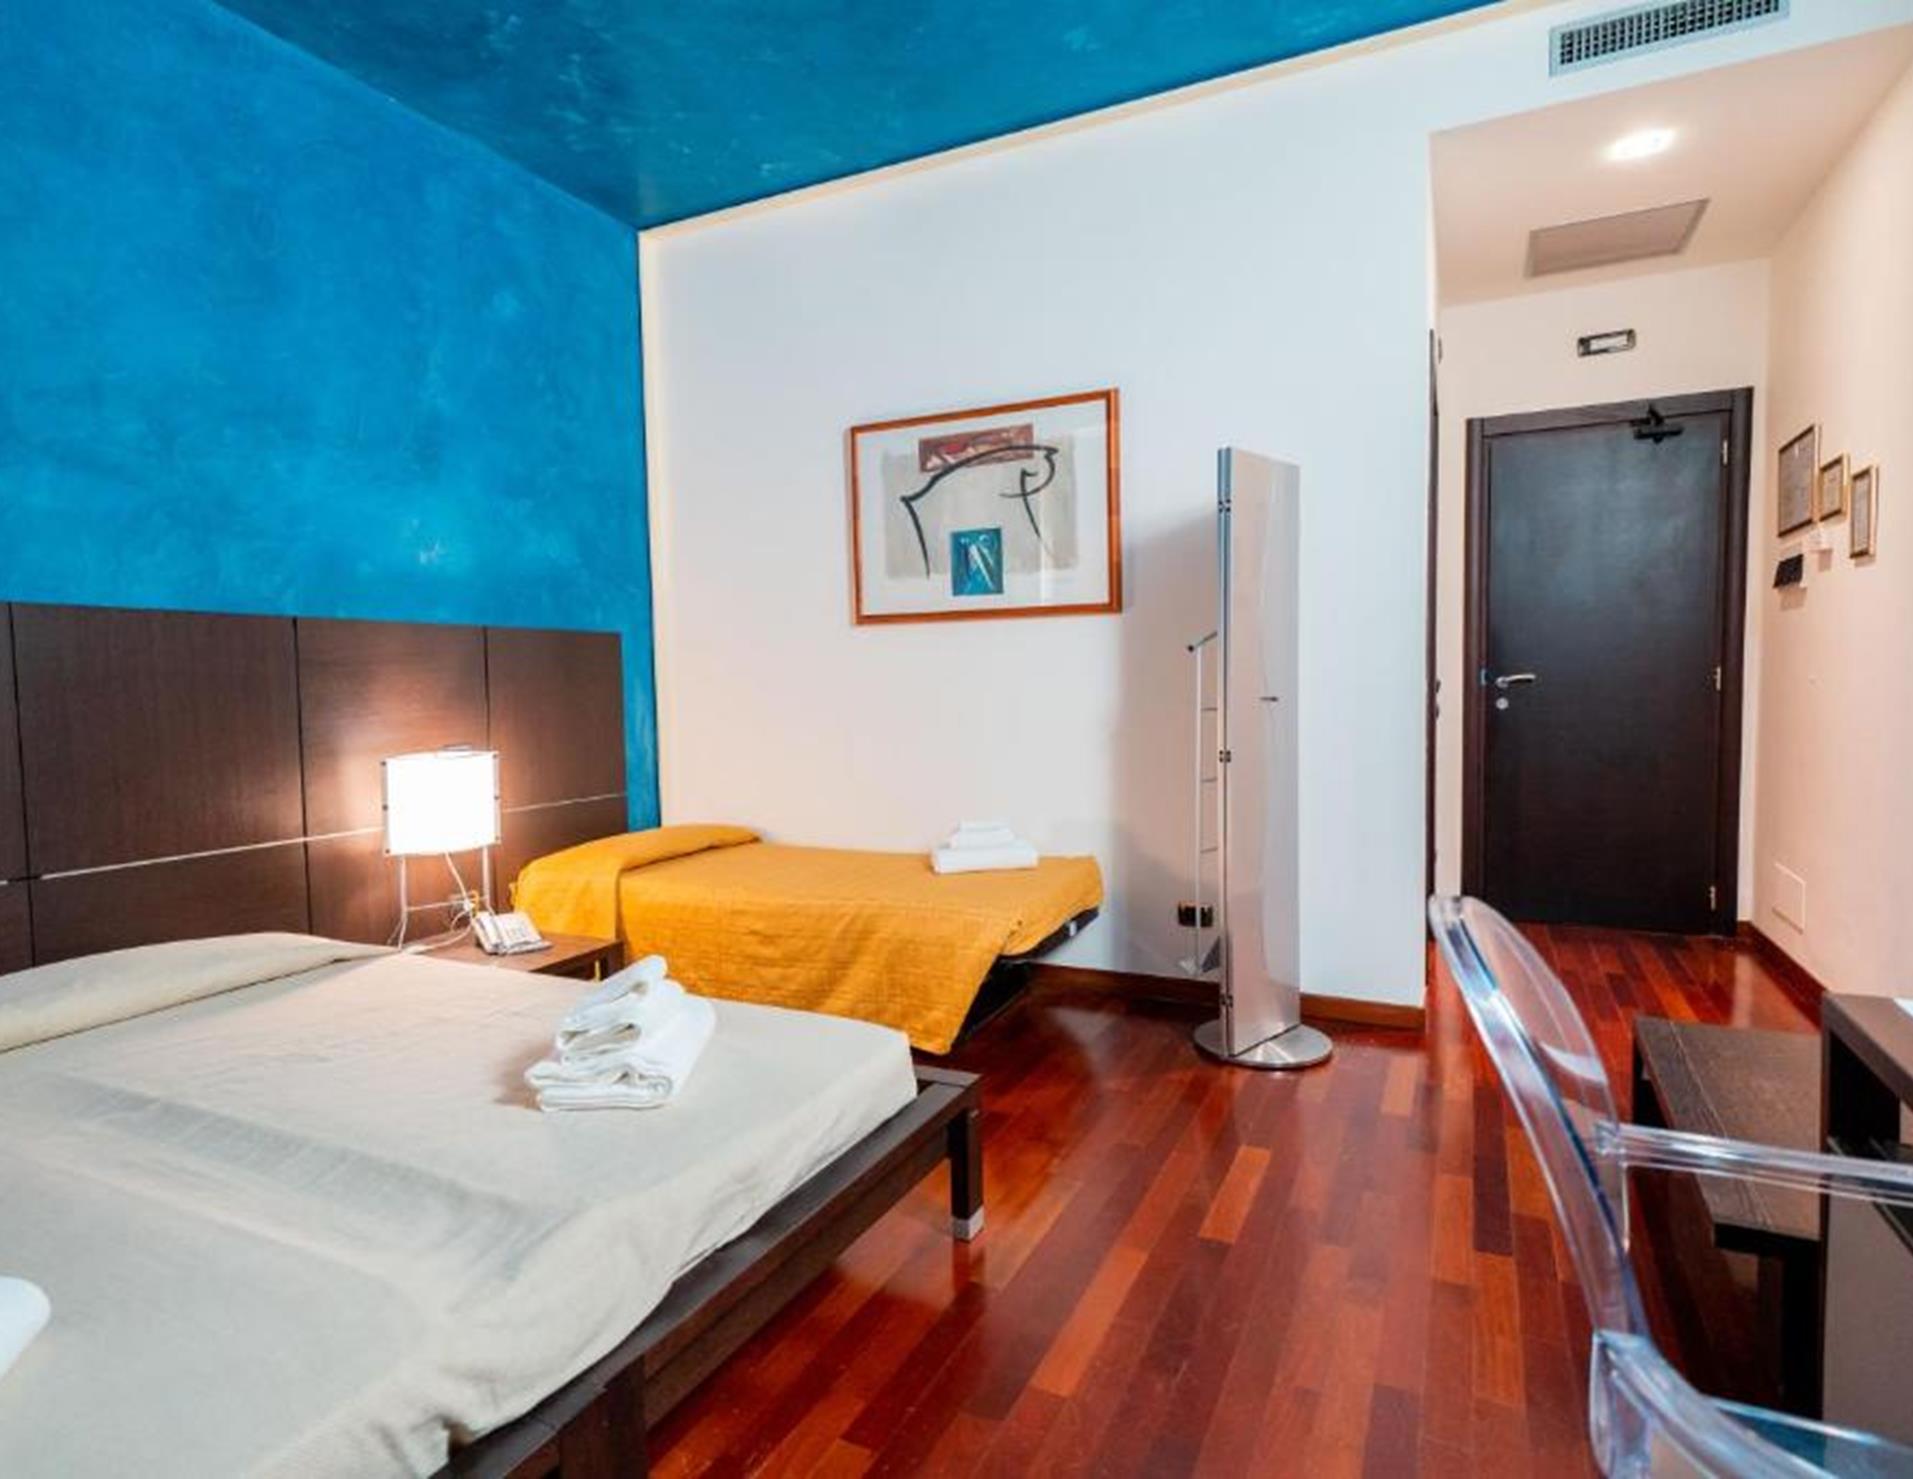 Hotel Albatros - Room 5